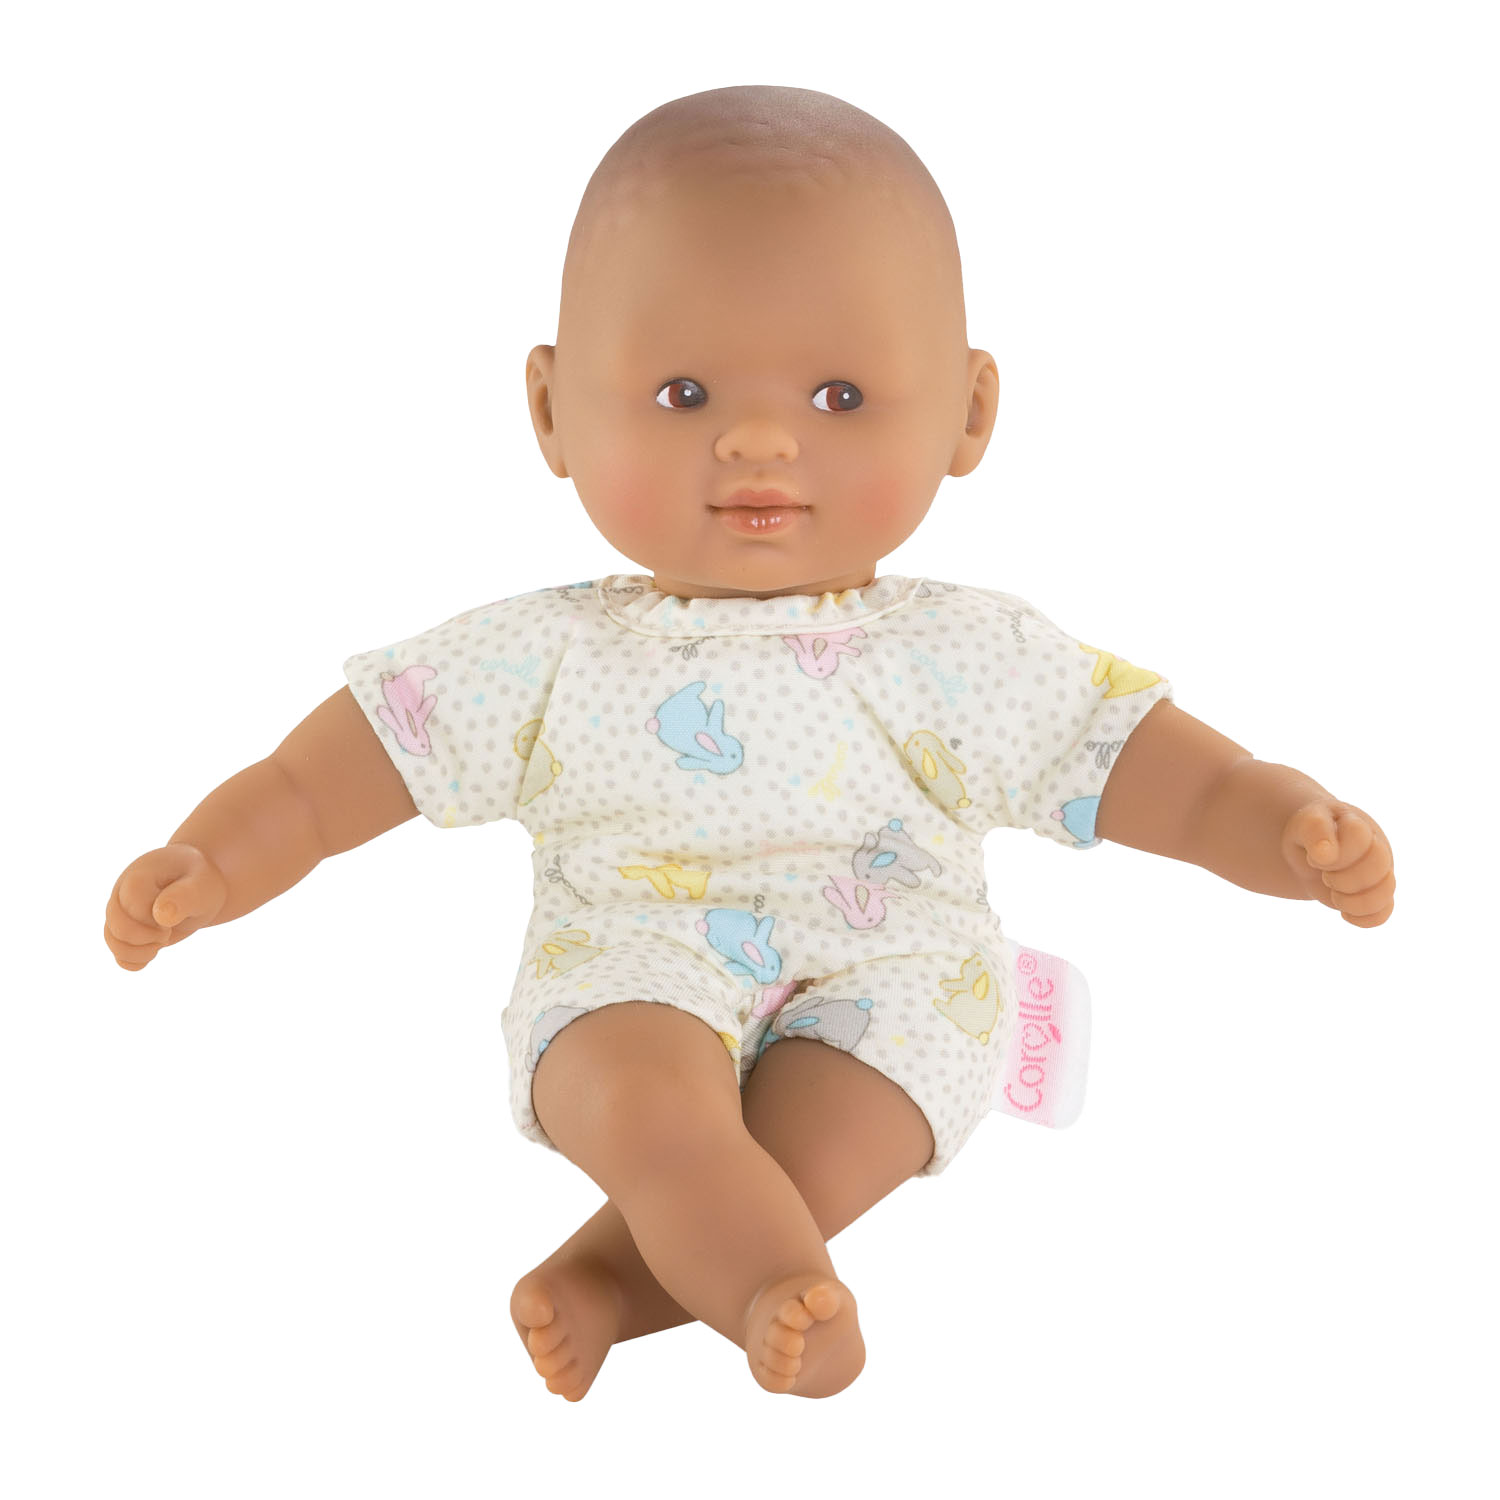 Corolle Mon Premier Poupon Mini Calin Baby Doll - Lapin Yeux Marron, 20 cm